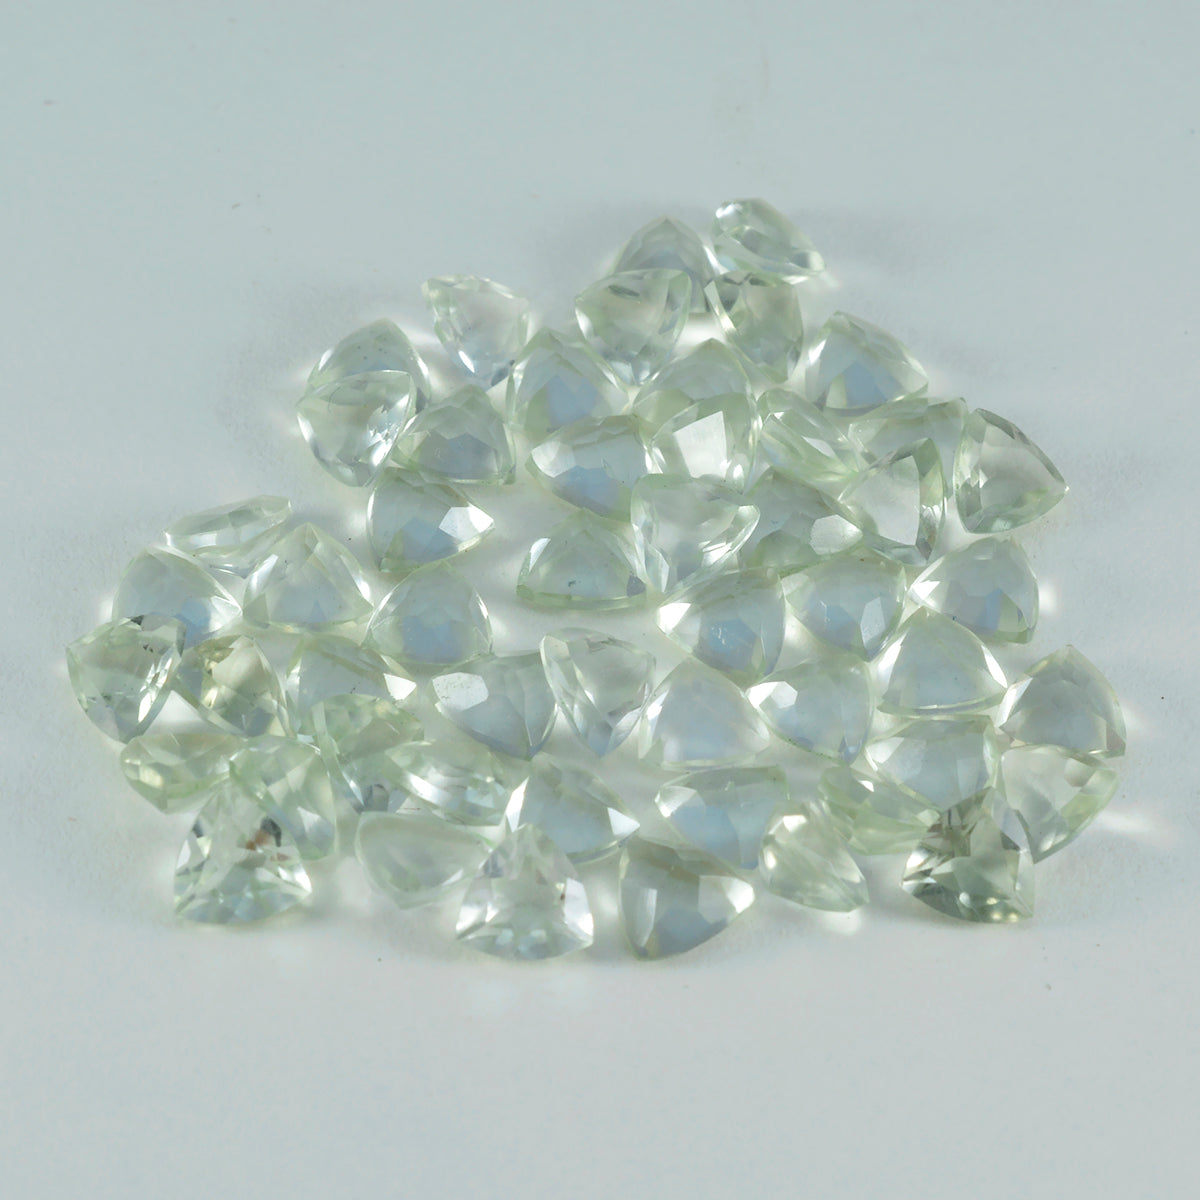 riyogems 1 шт., зеленый аметист, ограненный, 5x5 мм, форма триллиона, хорошее качество, свободные драгоценные камни